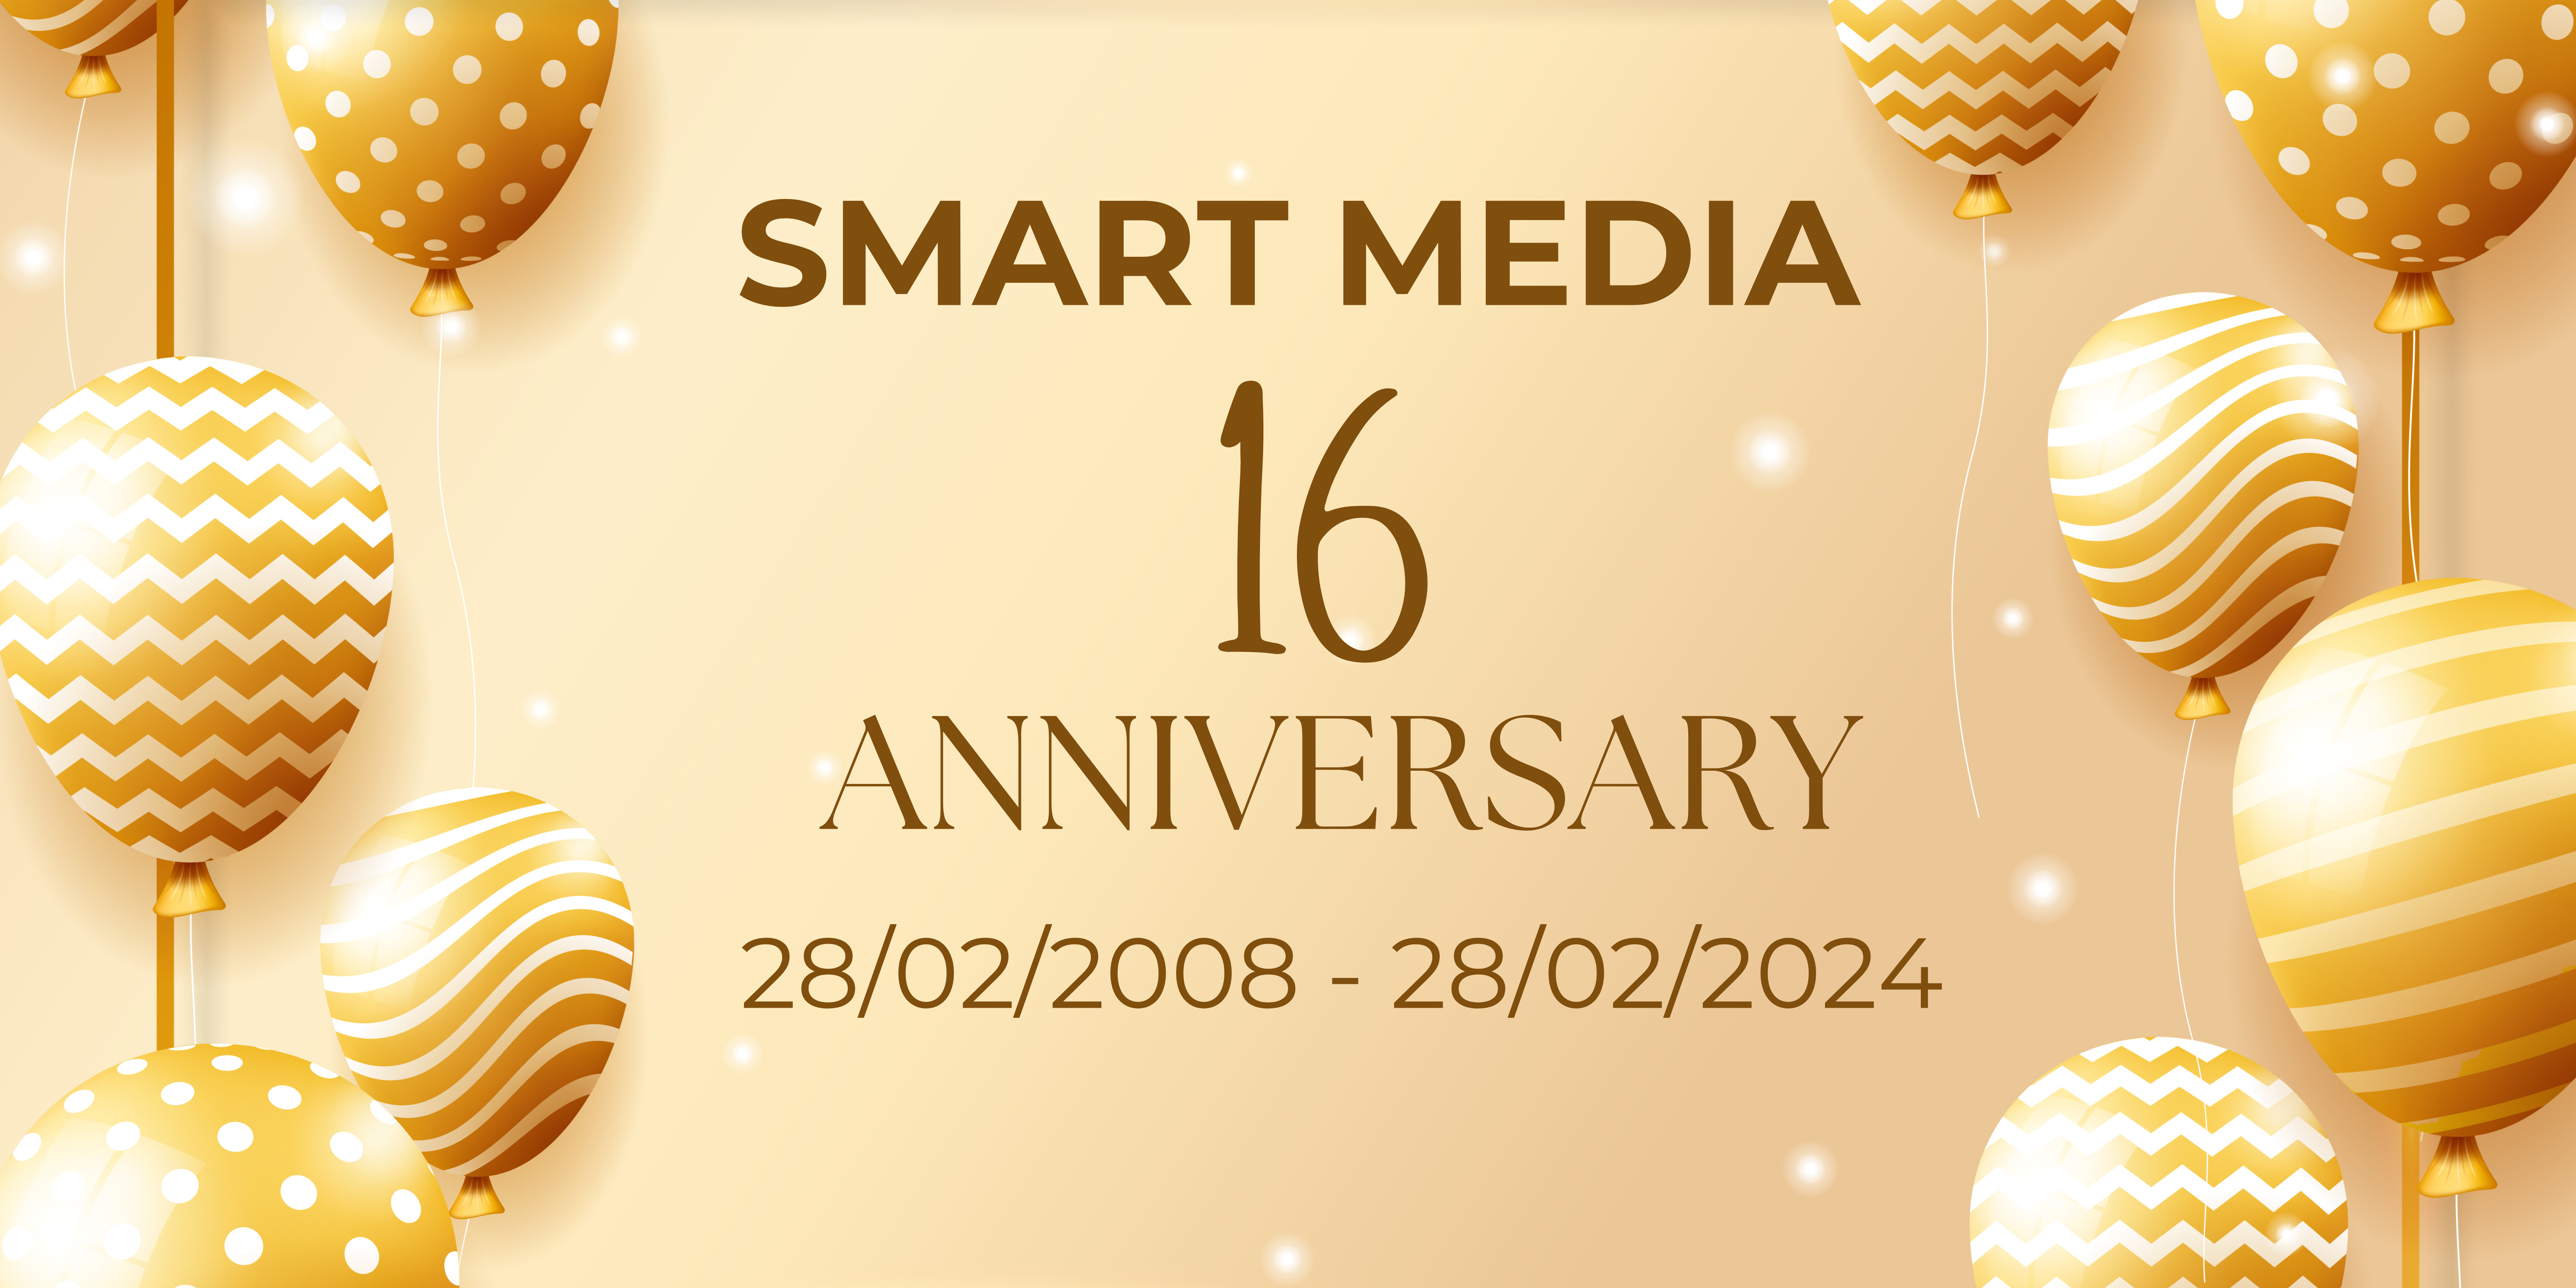 Smart Media kỷ niệm 16 năm hình thành và phát triển.